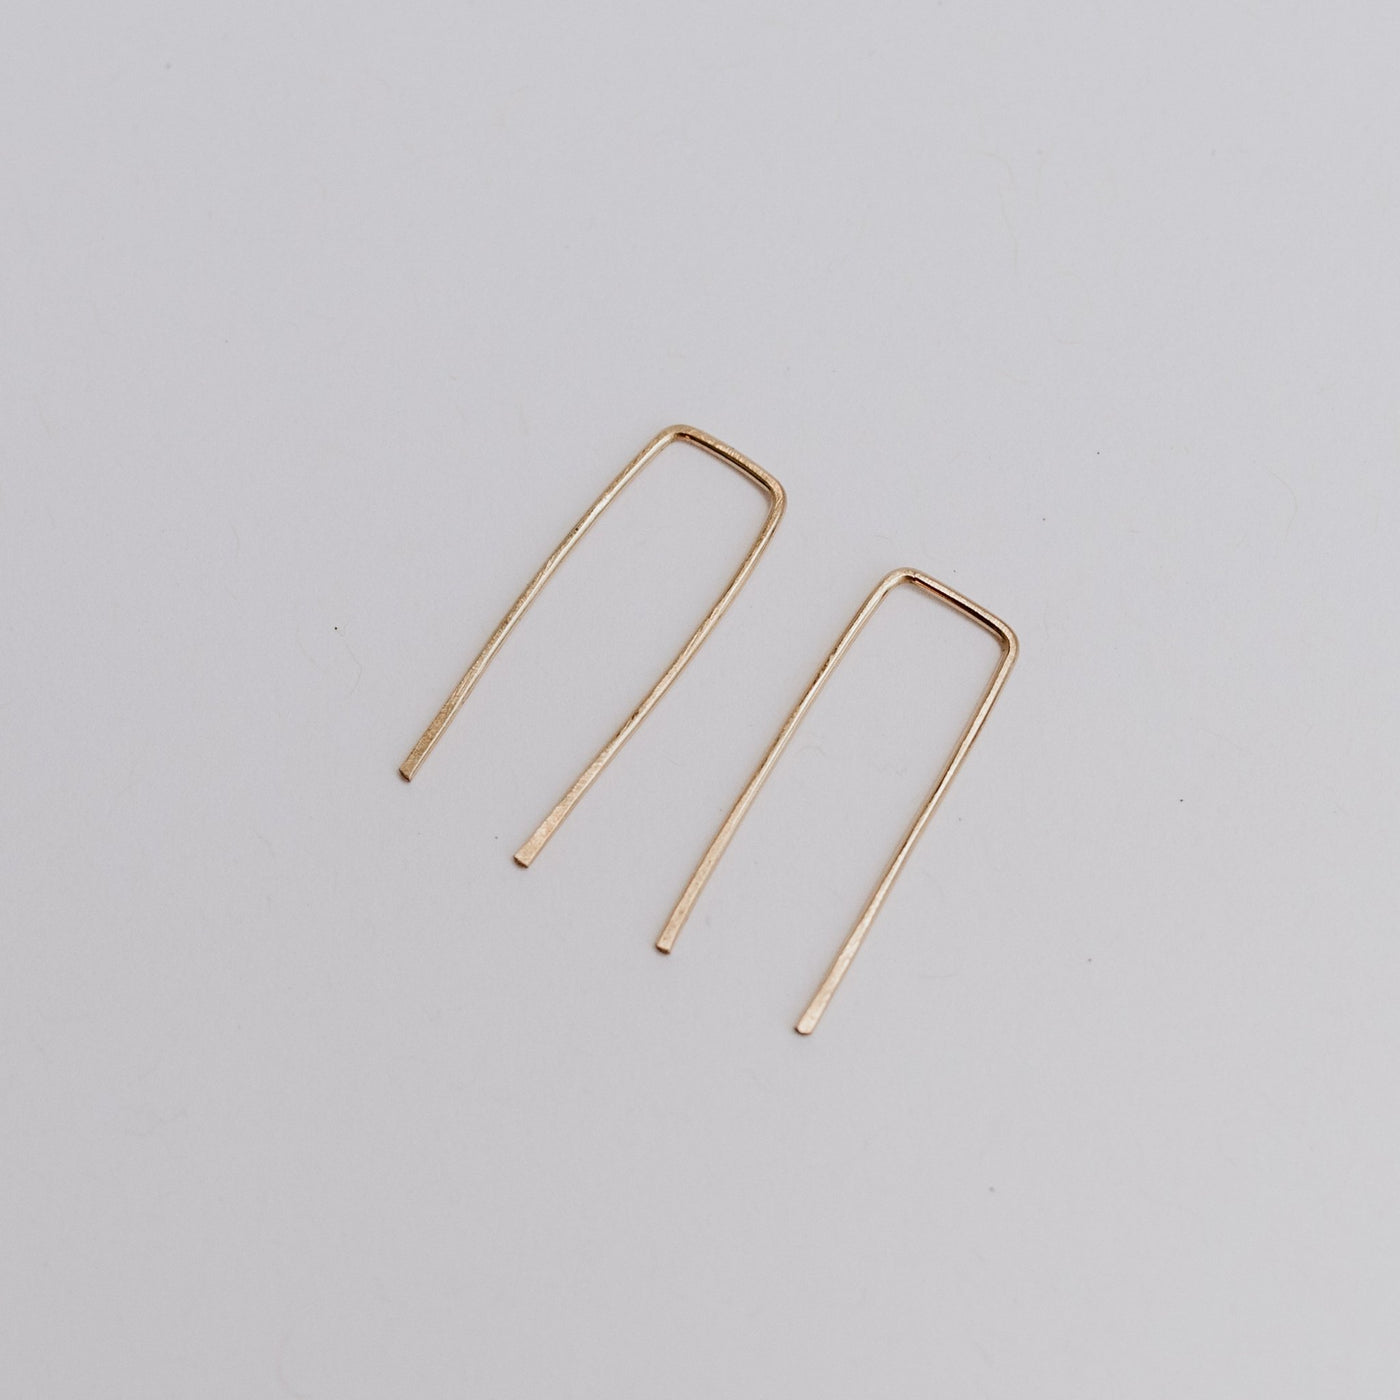 Adare Earrings - Jillian Leigh Jewellery - earrings